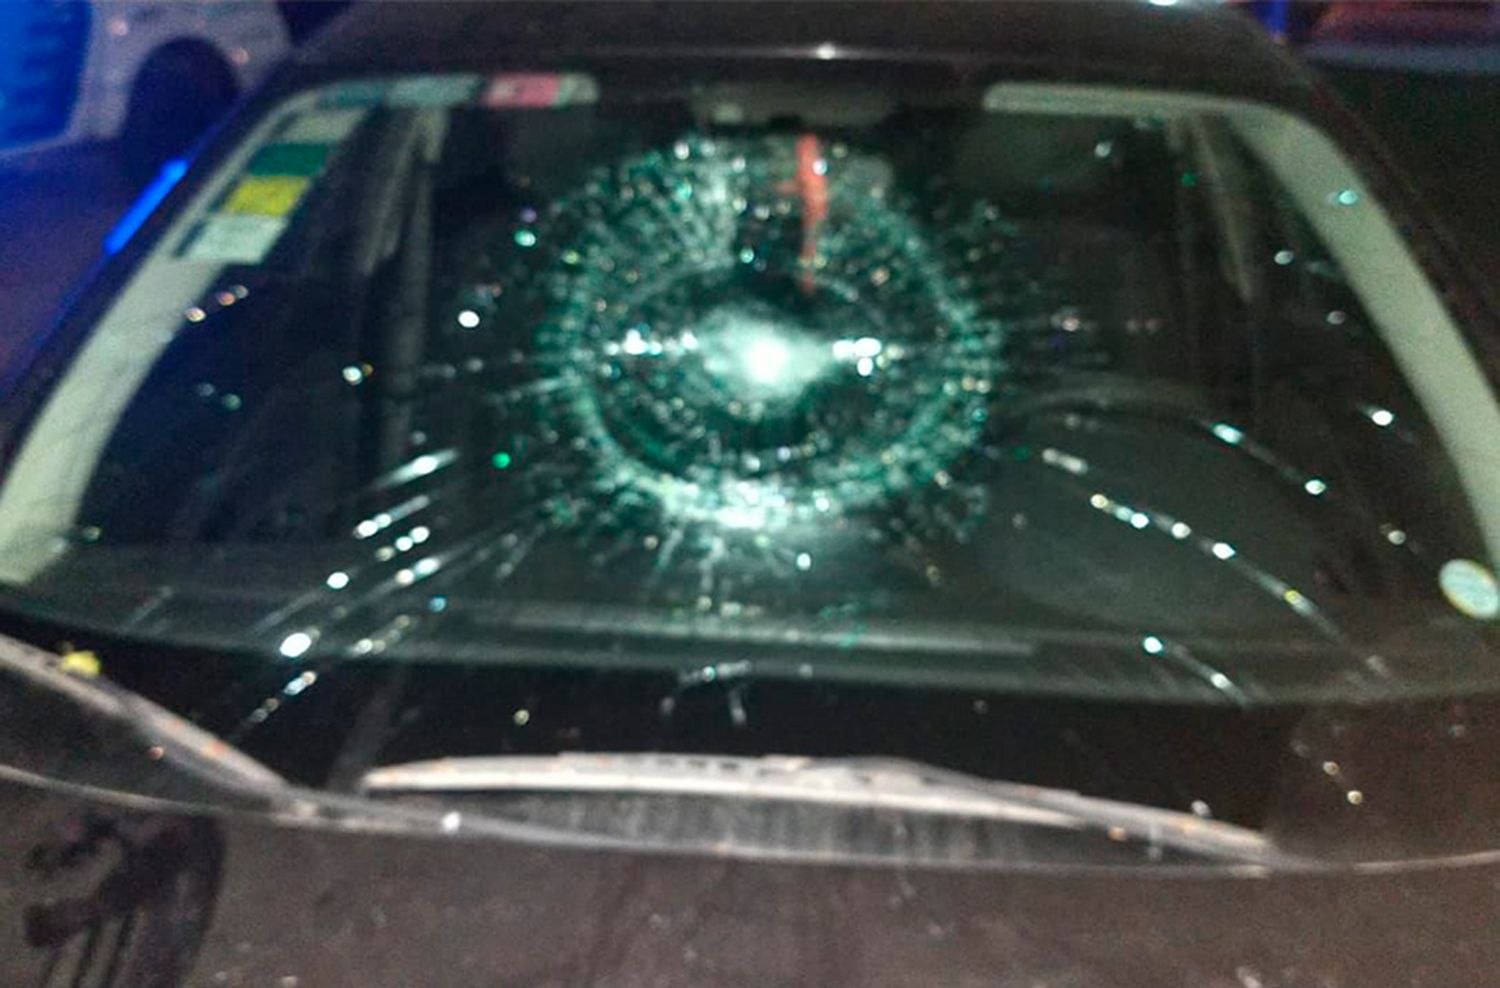 Sobrino en estado de furia: agredió a su familia y rompió el auto